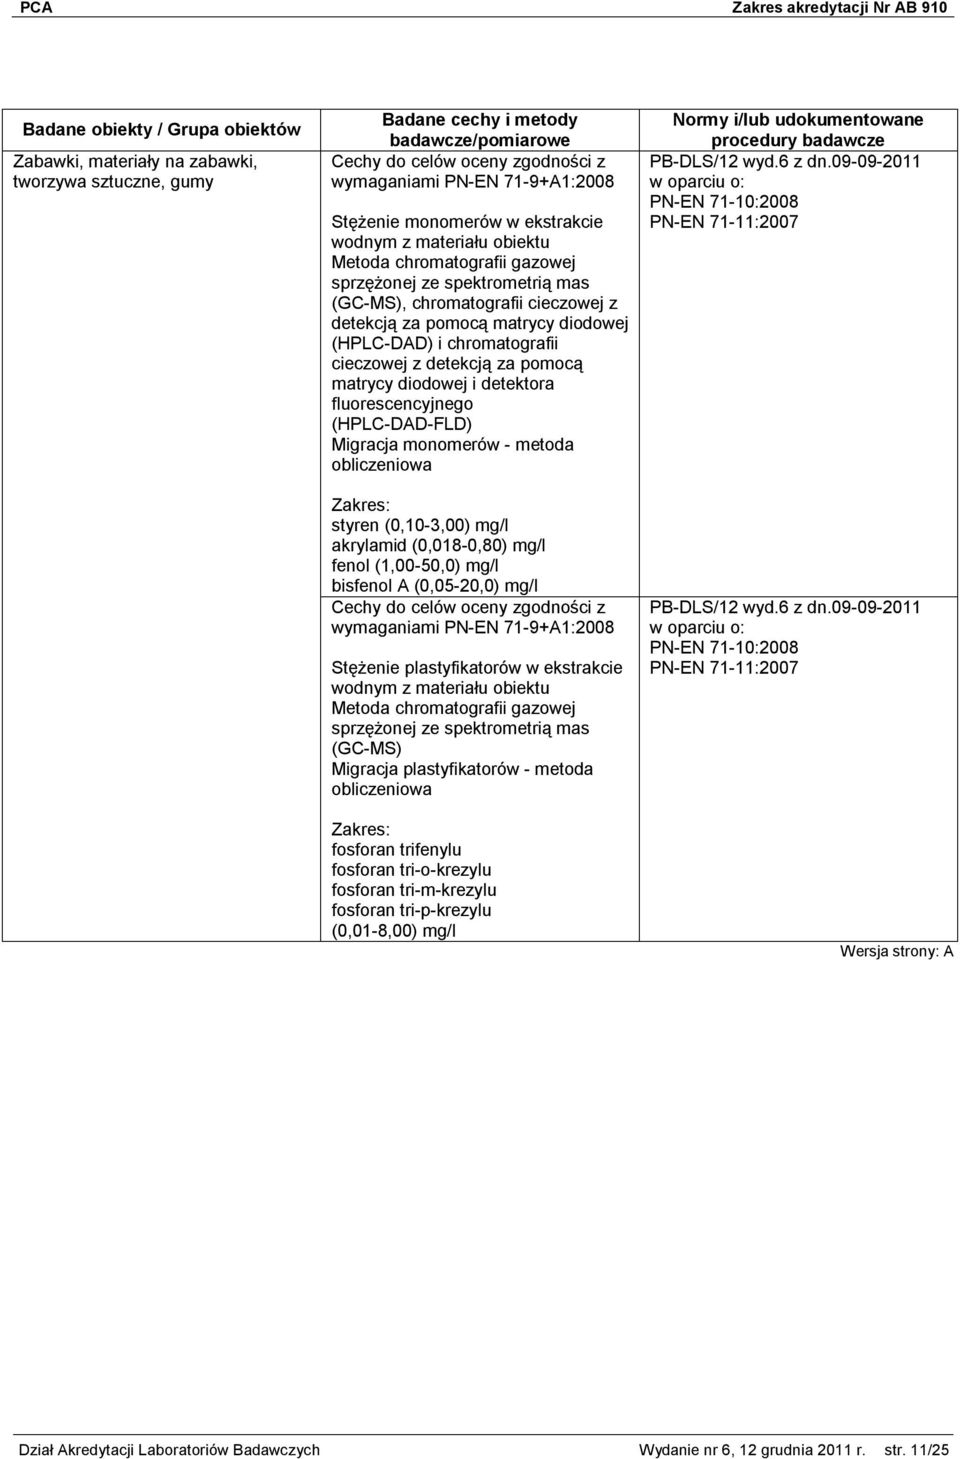 (HPLC-DAD-FLD) Migracja monomerów - metoda styren (0,10-3,00) mg/l akrylamid (0,018-0,80) mg/l fenol (1,00-50,0) mg/l bisfenol A (0,05-20,0) mg/l wymaganiami PN-EN 71-9+A1:2008 Stężenie